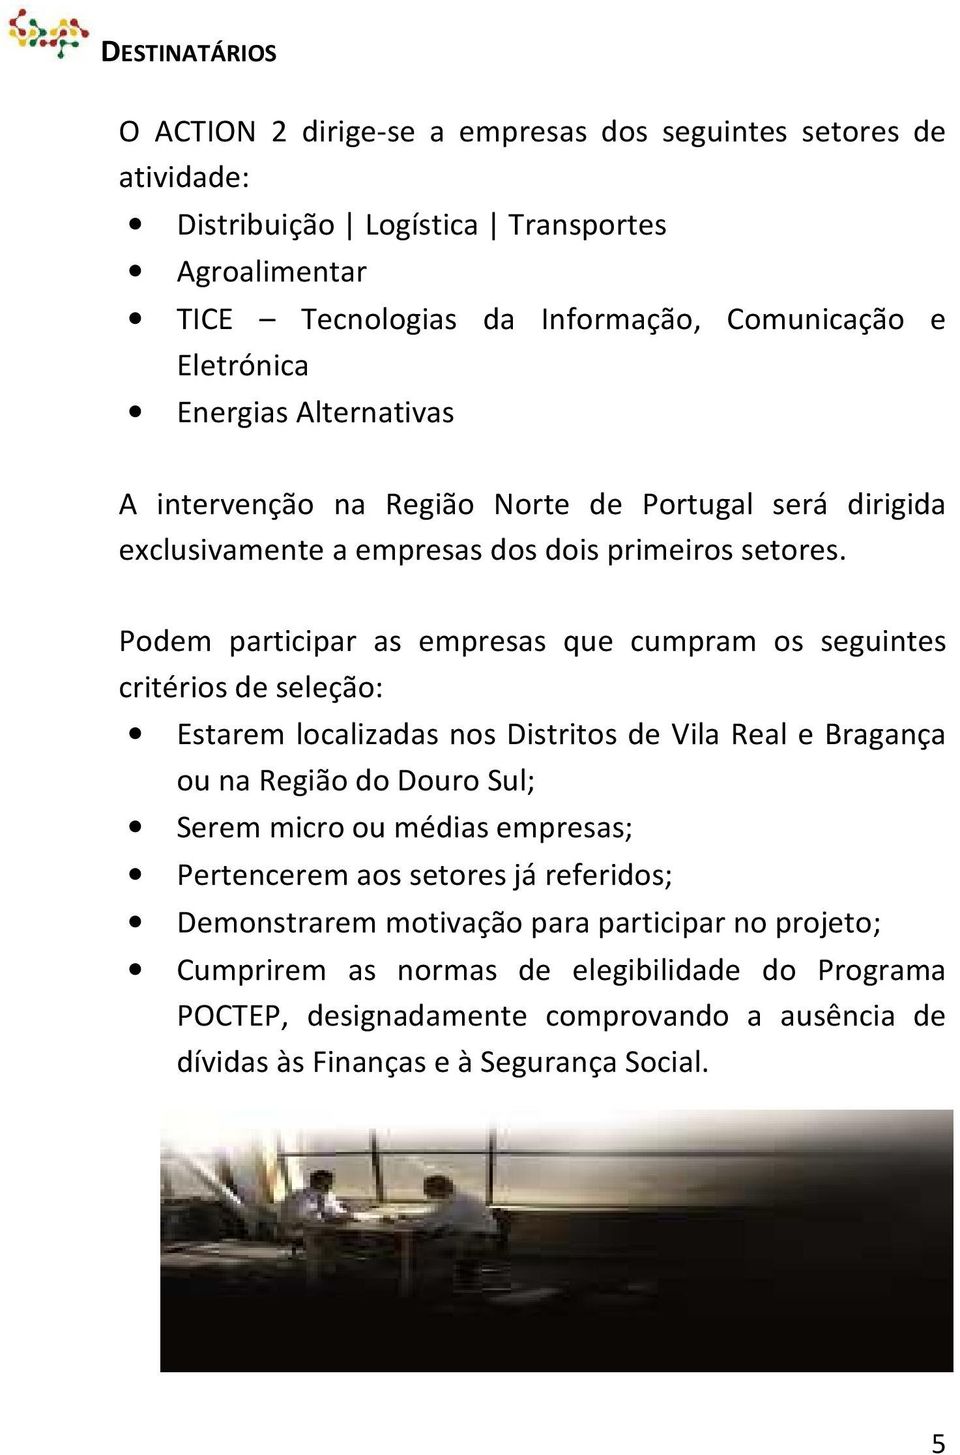 Podem participar as empresas que cumpram os seguintes critérios de seleção: Estarem localizadas nos Distritos de Vila Real e Bragança ou na Região do Douro Sul; Serem micro ou médias